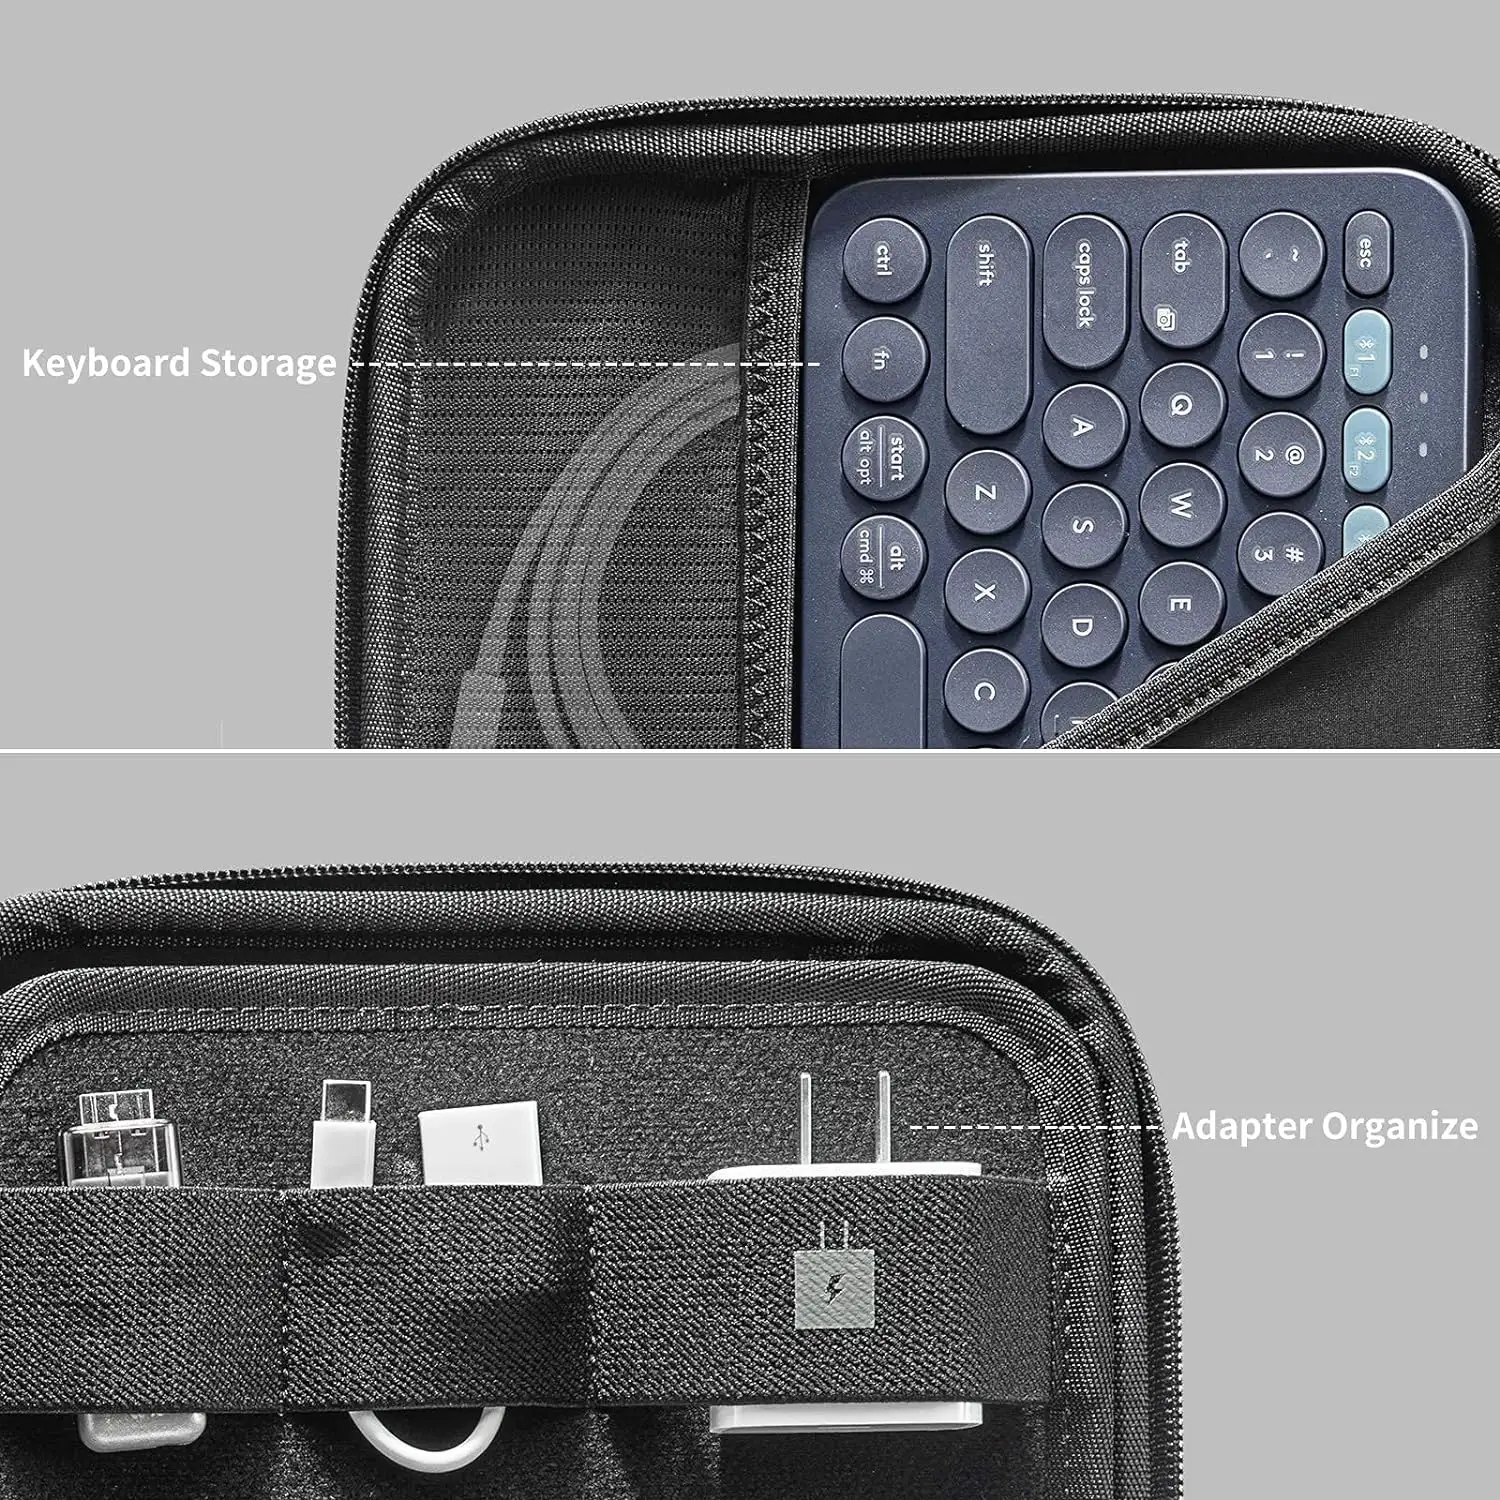 Жесткий чехол для планшета для Ipad защитный портфель Органайзер сумка для поверхности Pro 9/8/X/7/6/5, ручки, кабели, электроника